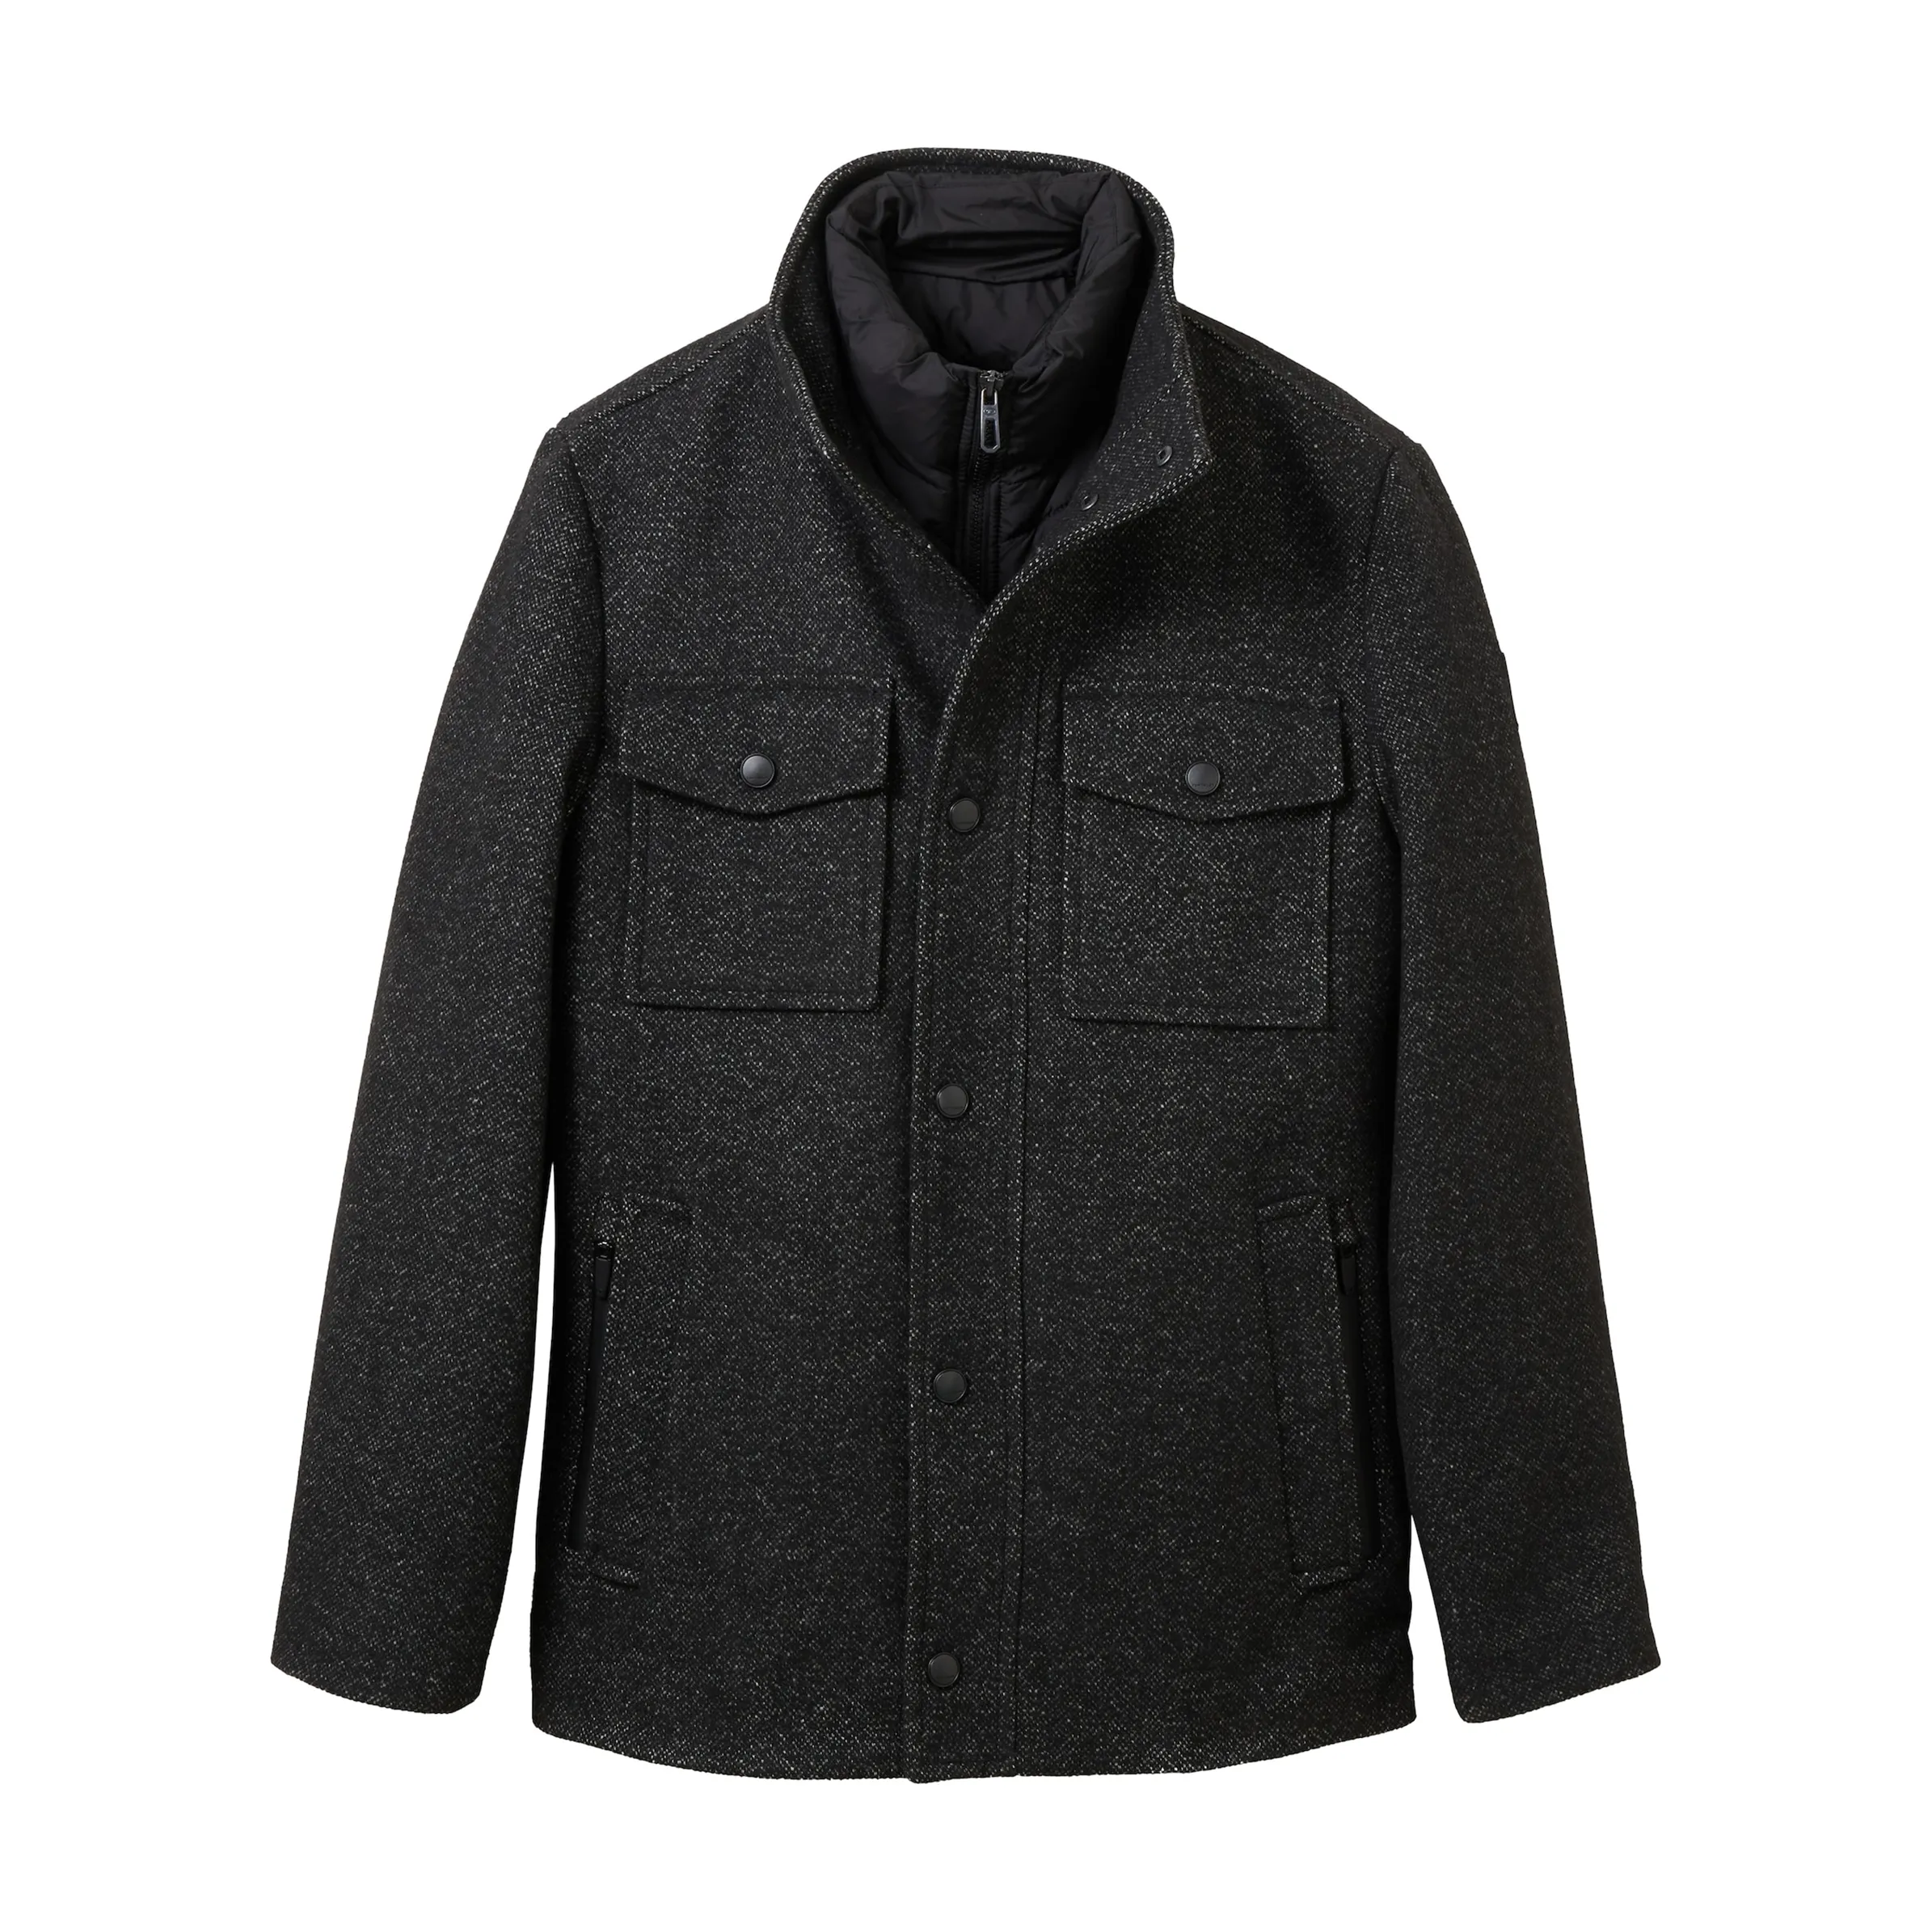 Tom Tailor 1037345 wool jacket 2 in 1 Grau 884289 32521 1